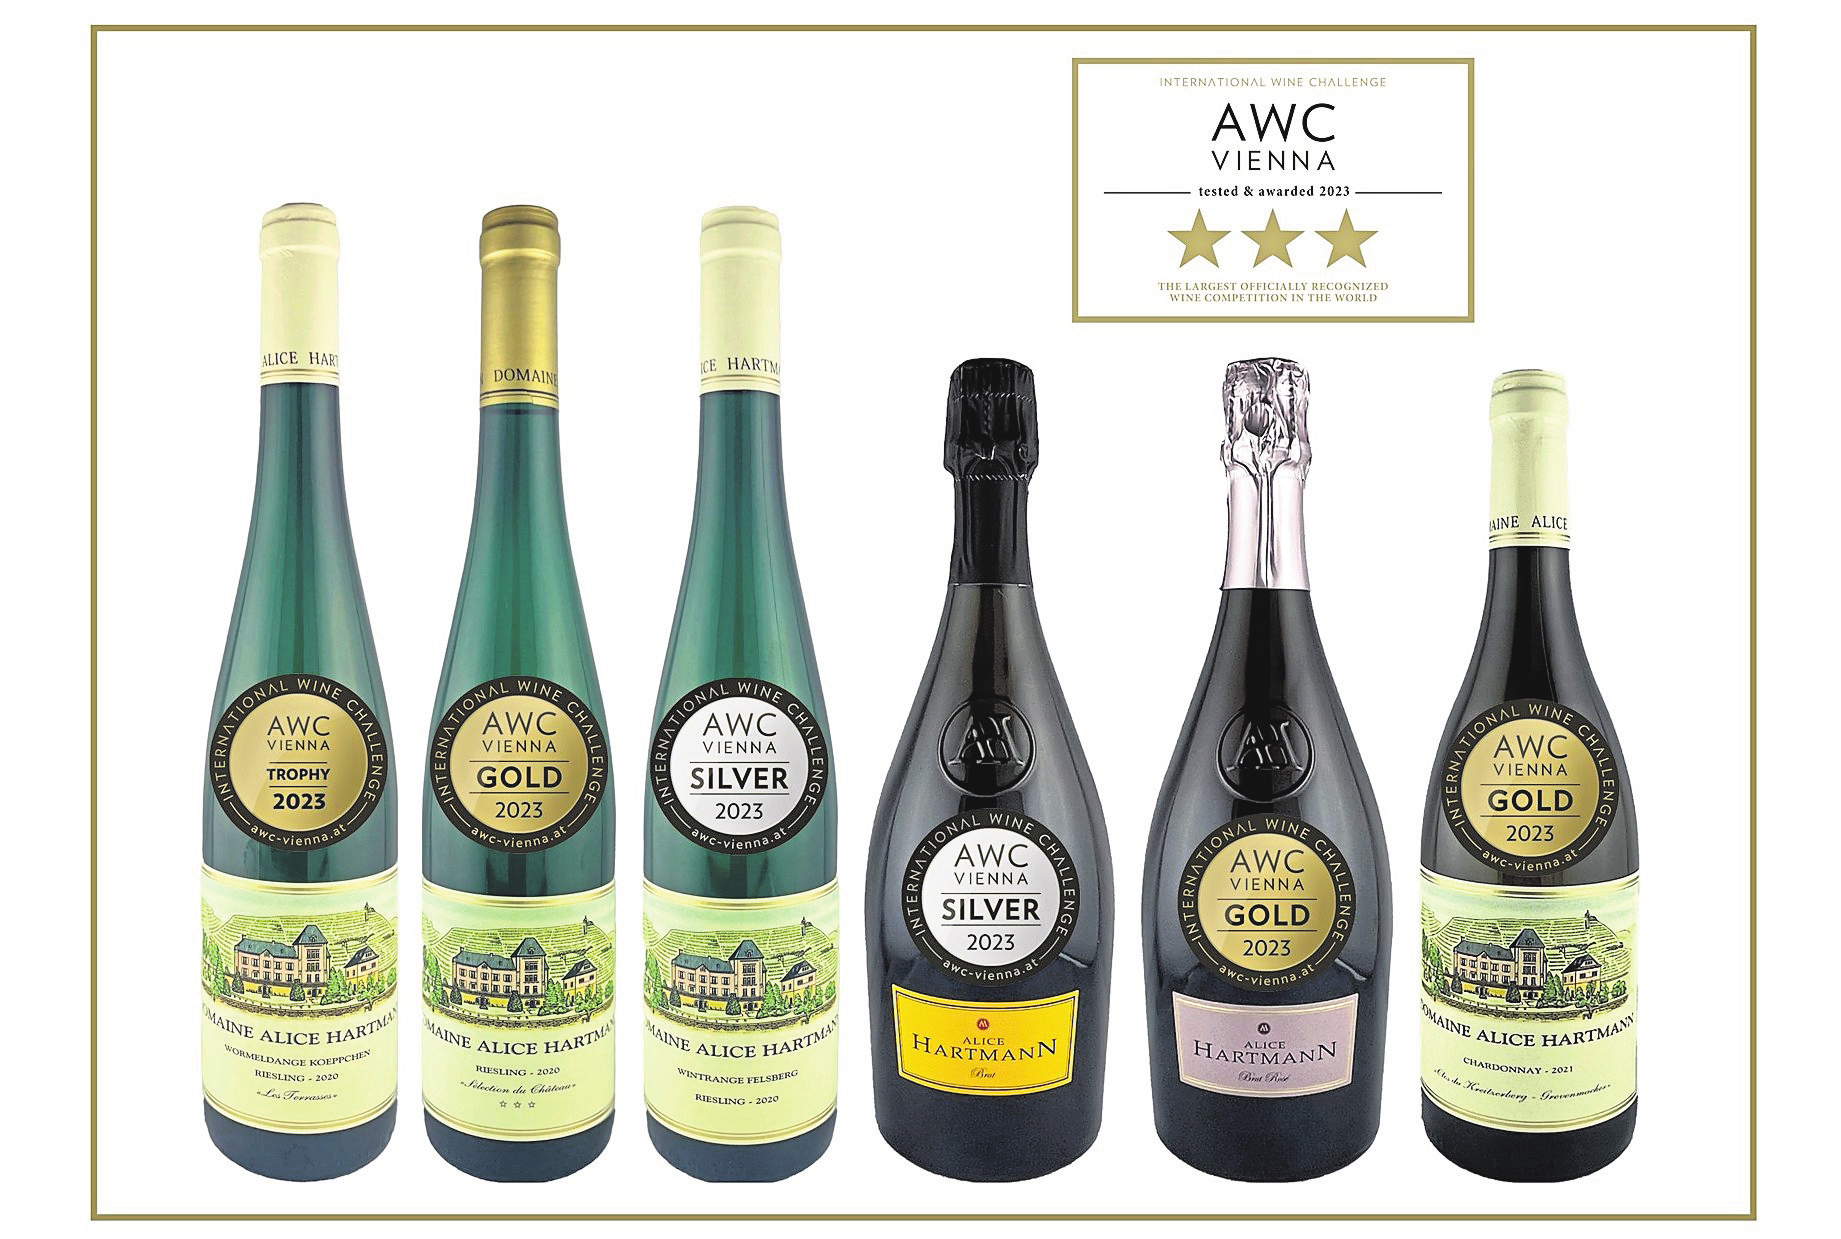 Die Domaine Alice Hartmann wurde beim Weinwettbewerb AWC Vienna mit drei Sternen ausgezeichnet und befindet sich damit unter der Top-Elite der 1514 Teilnehmer. Der Riesling„Les Terrasses“2020 (Goldmedaille) belegte den 1. Platz unter allen Rieslingen in seiner Kategorie, der Riesling, Sélection du Château“ 2020 (Gold) den dritten. Mit Gold wurden auch der Chardonnay „Clos du Kreitzerberg“ 2020 und der Crémant Hartmann Rosé Brut prämiert. Silber ging an den Riesling „Wintange Felsberg“ 2020 sowie an den Crémant Hartmann Brut.